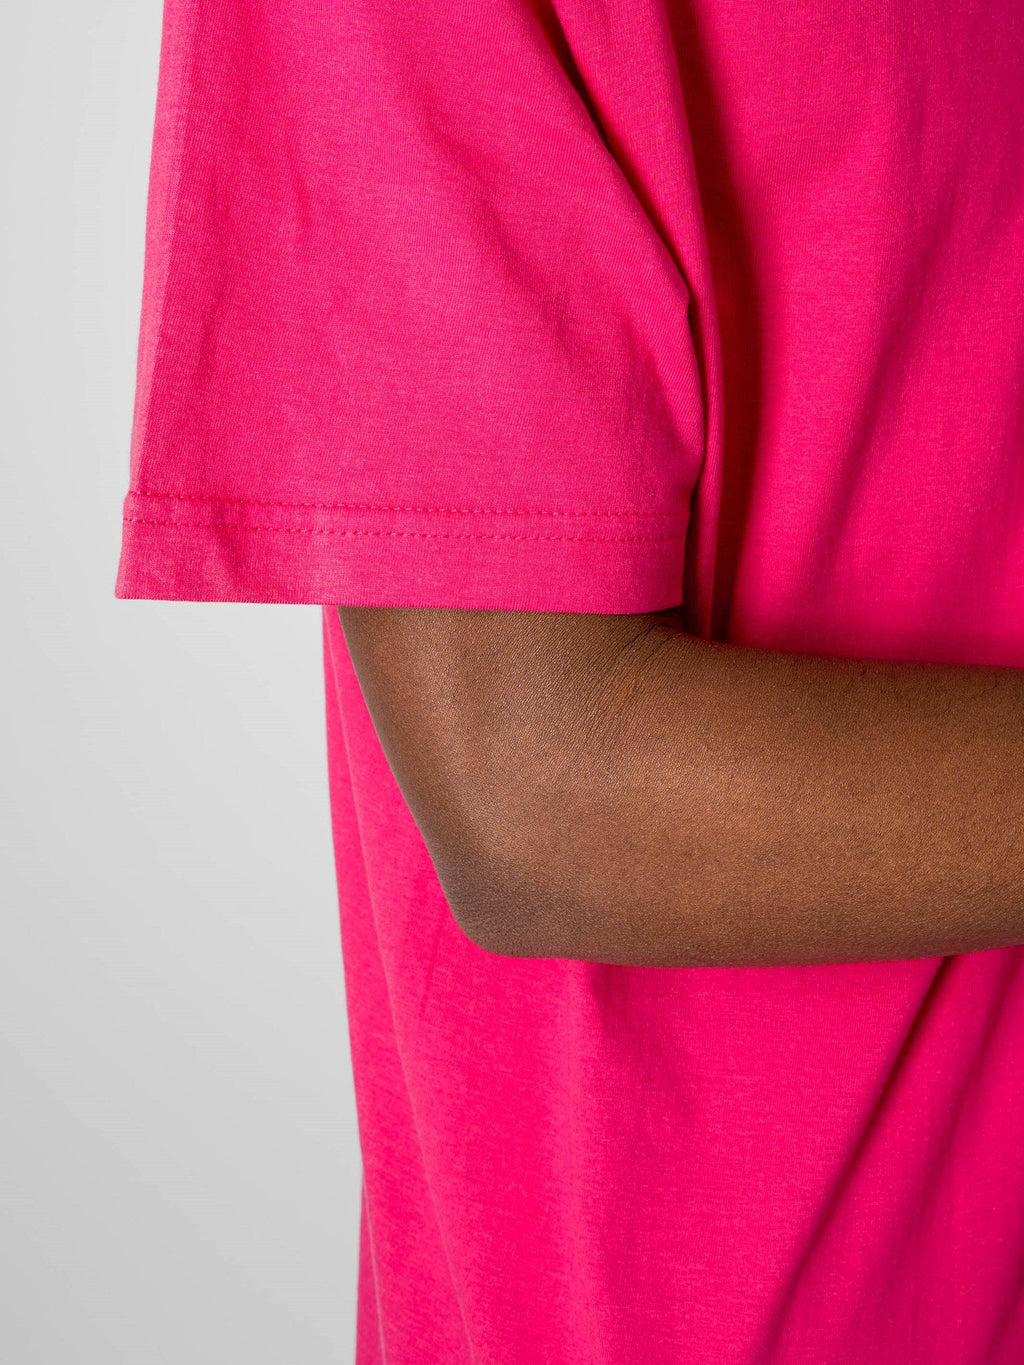 Υπερμεγέθη μπλουζάκι - ροζ